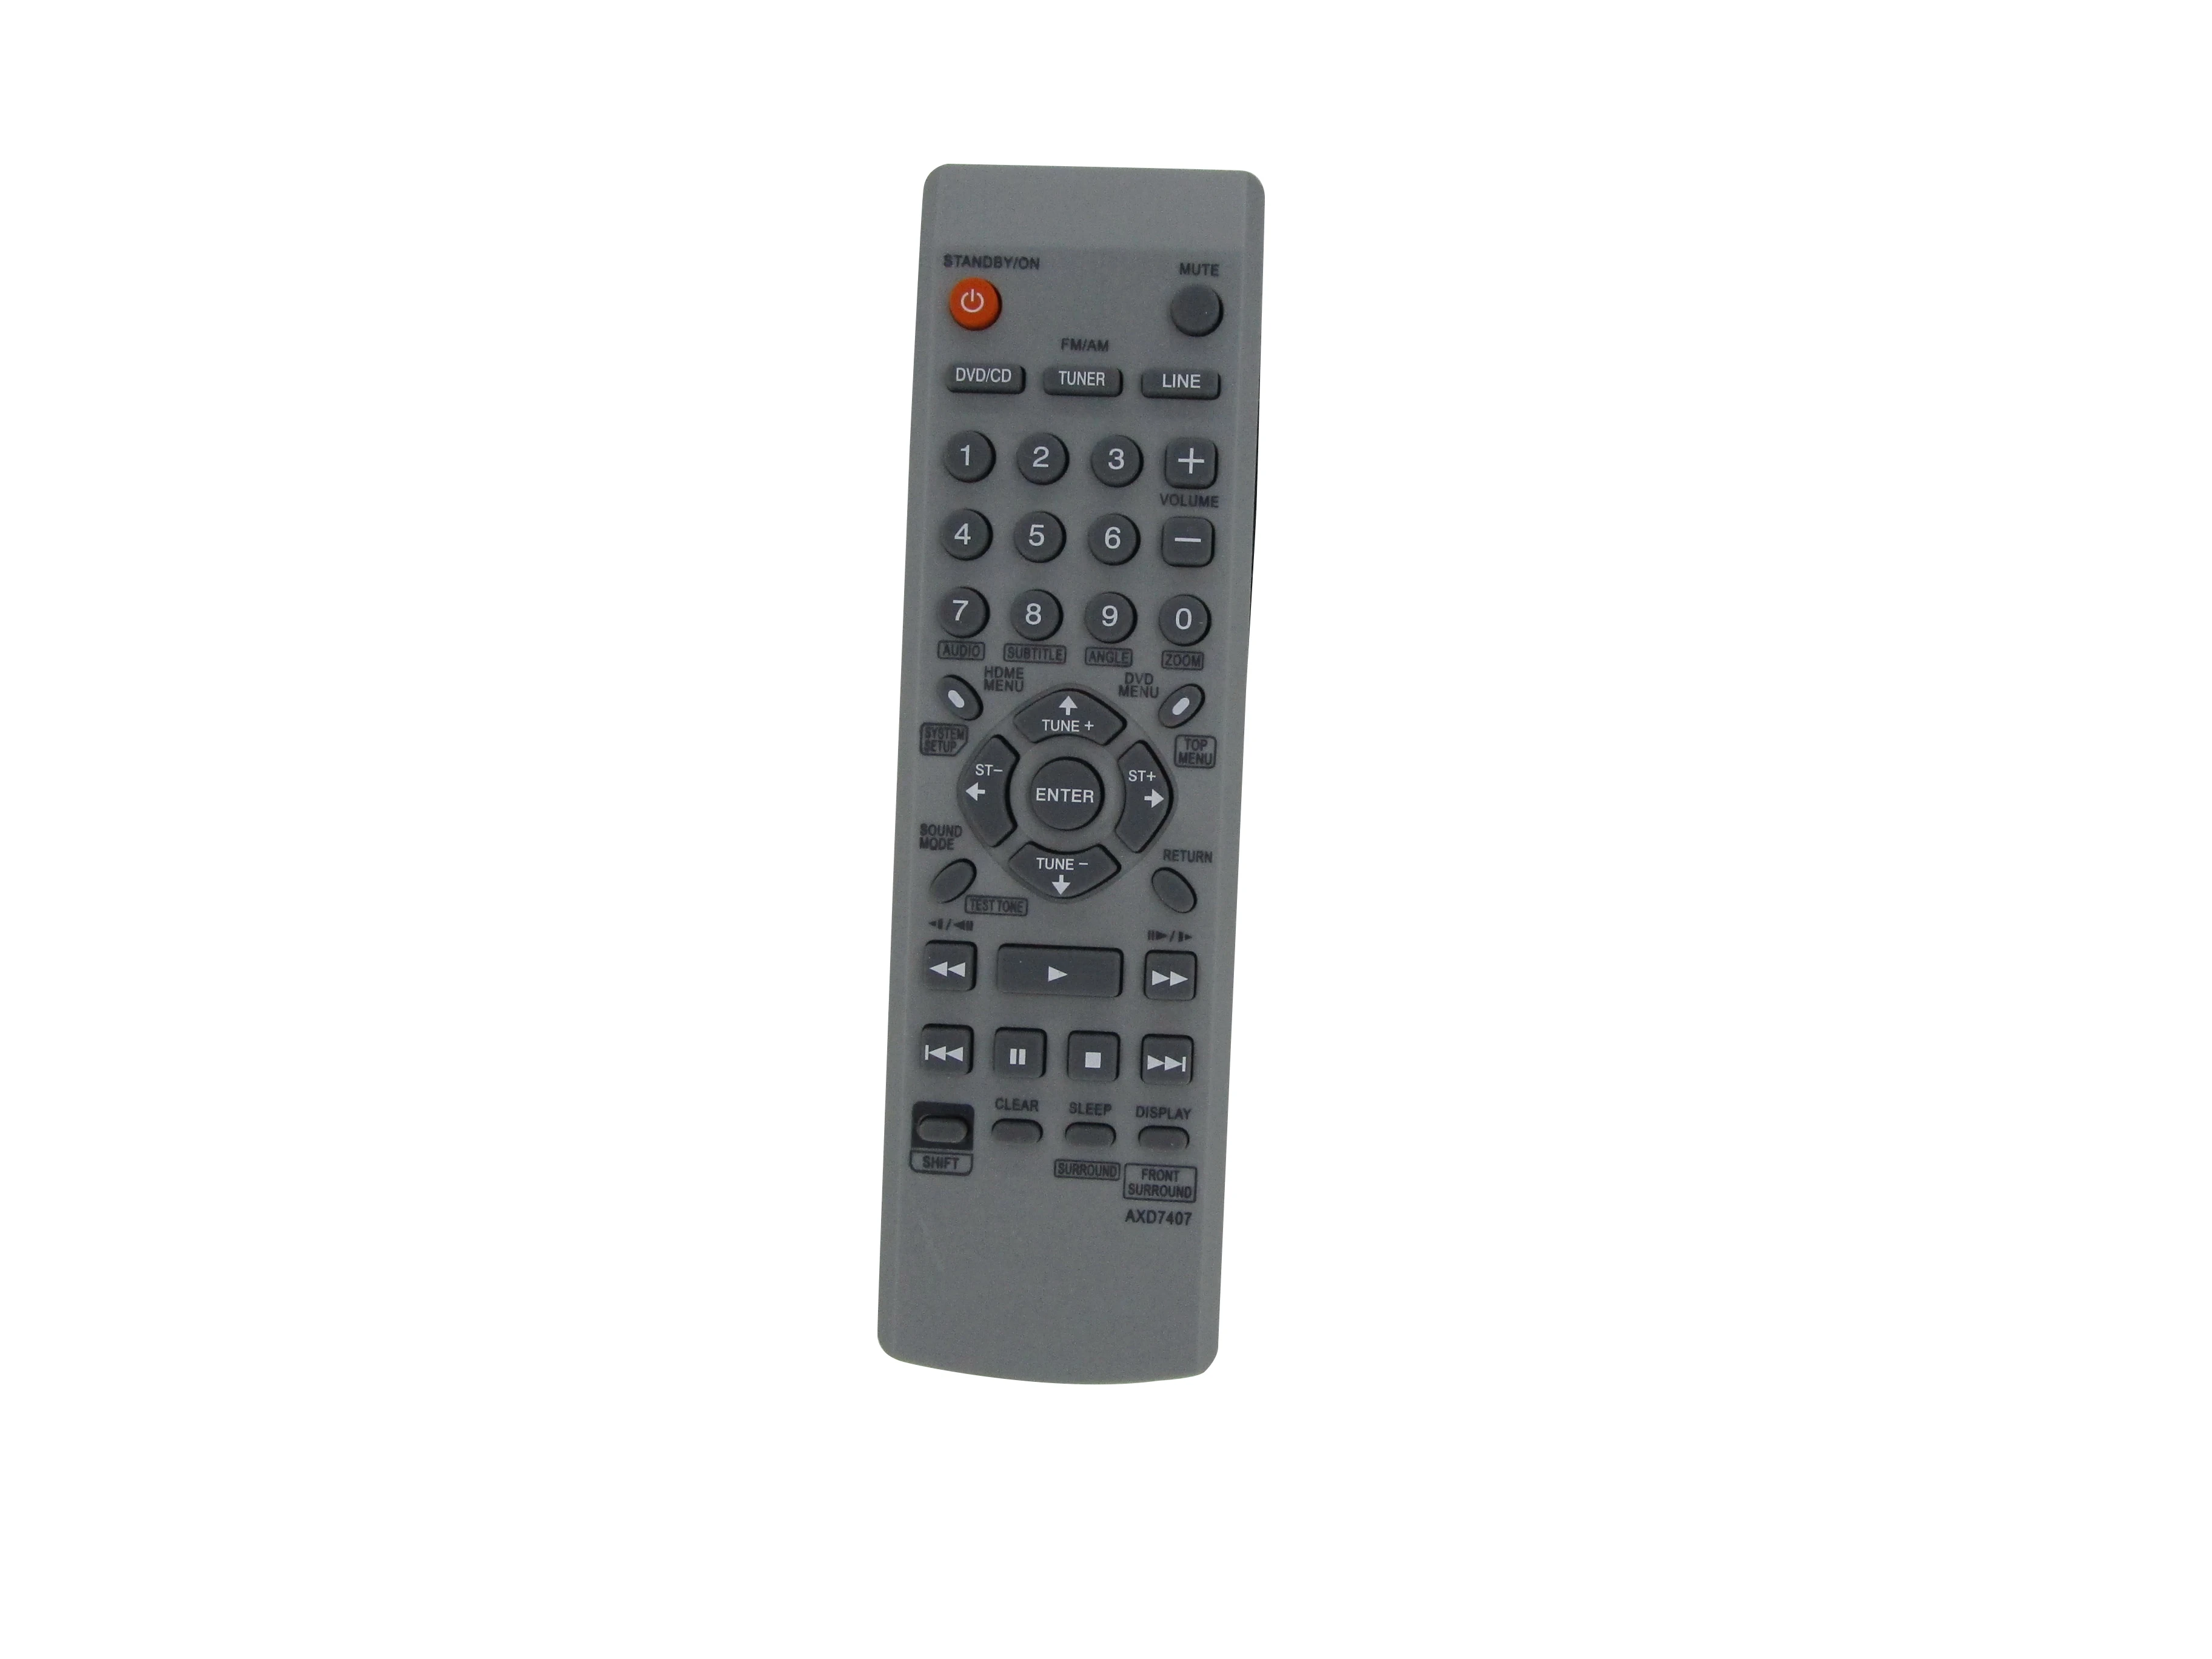 

Remote Control For Pioneer AXD7407 DSC-232 XV-DV232 XV-DV232T XV-DV240 XV-DV131 XV-DV250 DVD CD Receiver Home Theater System